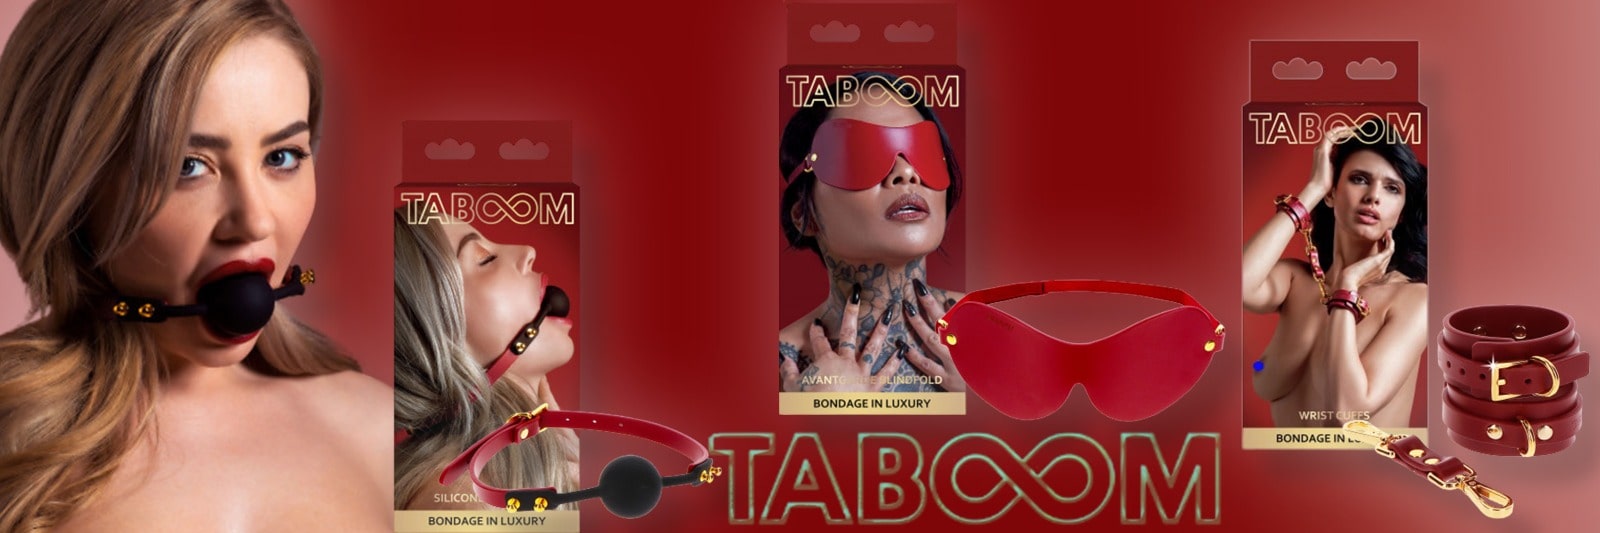 Taboom Luxury